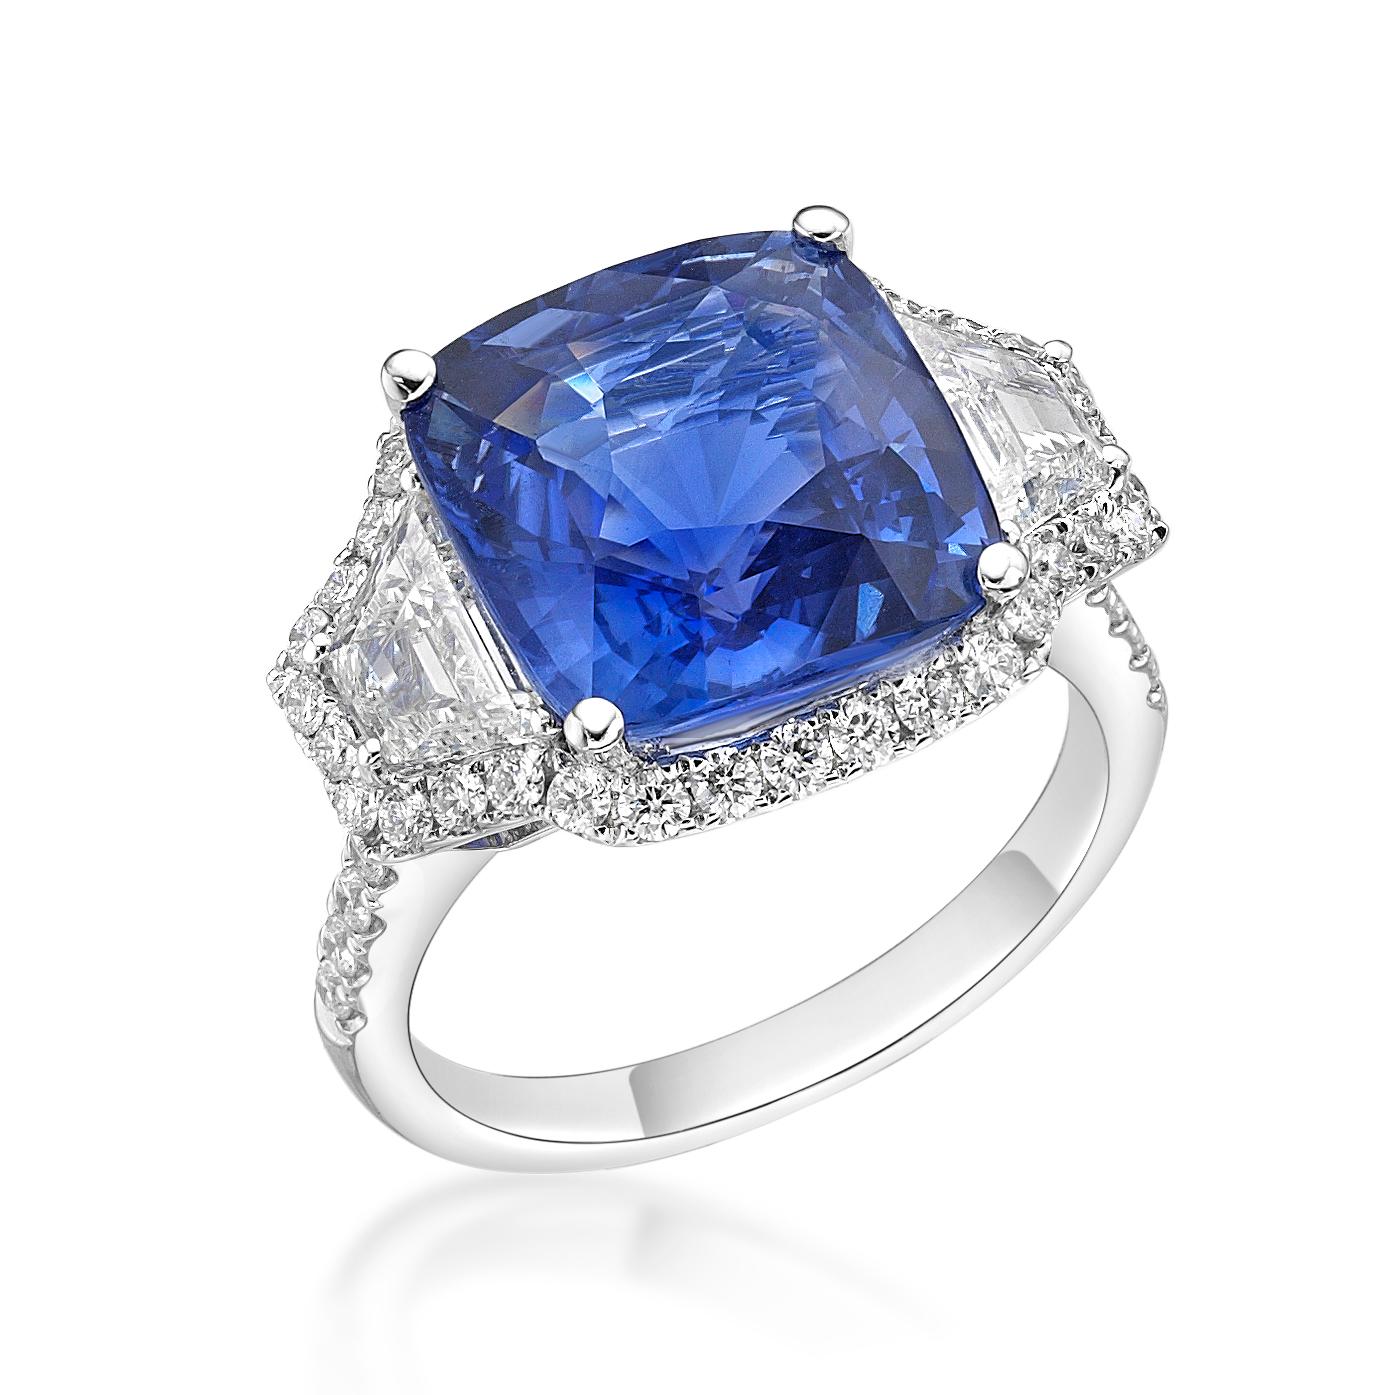 In der Mitte dieses exquisiten Rings befindet sich ein 9,16 Karat schwerer, unerhitzter, kissenförmiger blauer Saphir, der aus Sri Lanka stammt. Der Edelstein wird von zwei Trapezdiamanten flankiert, die von einem Heiligenschein aus funkelnden